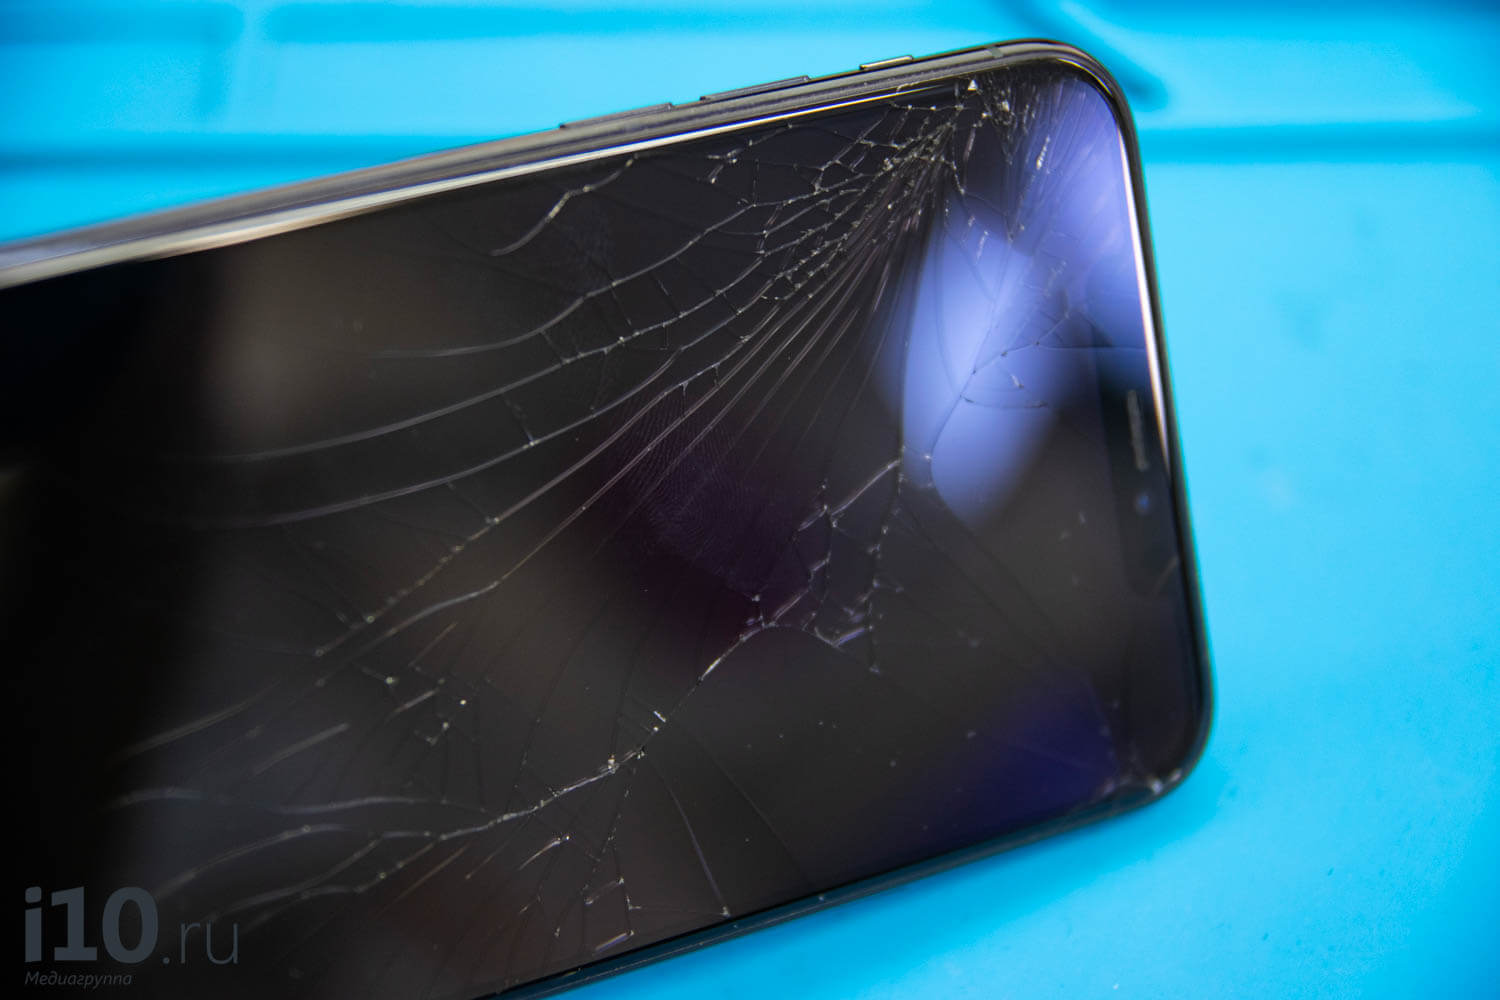 ≡ Цена на ремонт iPhone замена стекла, экрана (дисплея) Айфон цена в Алматы | iSupport